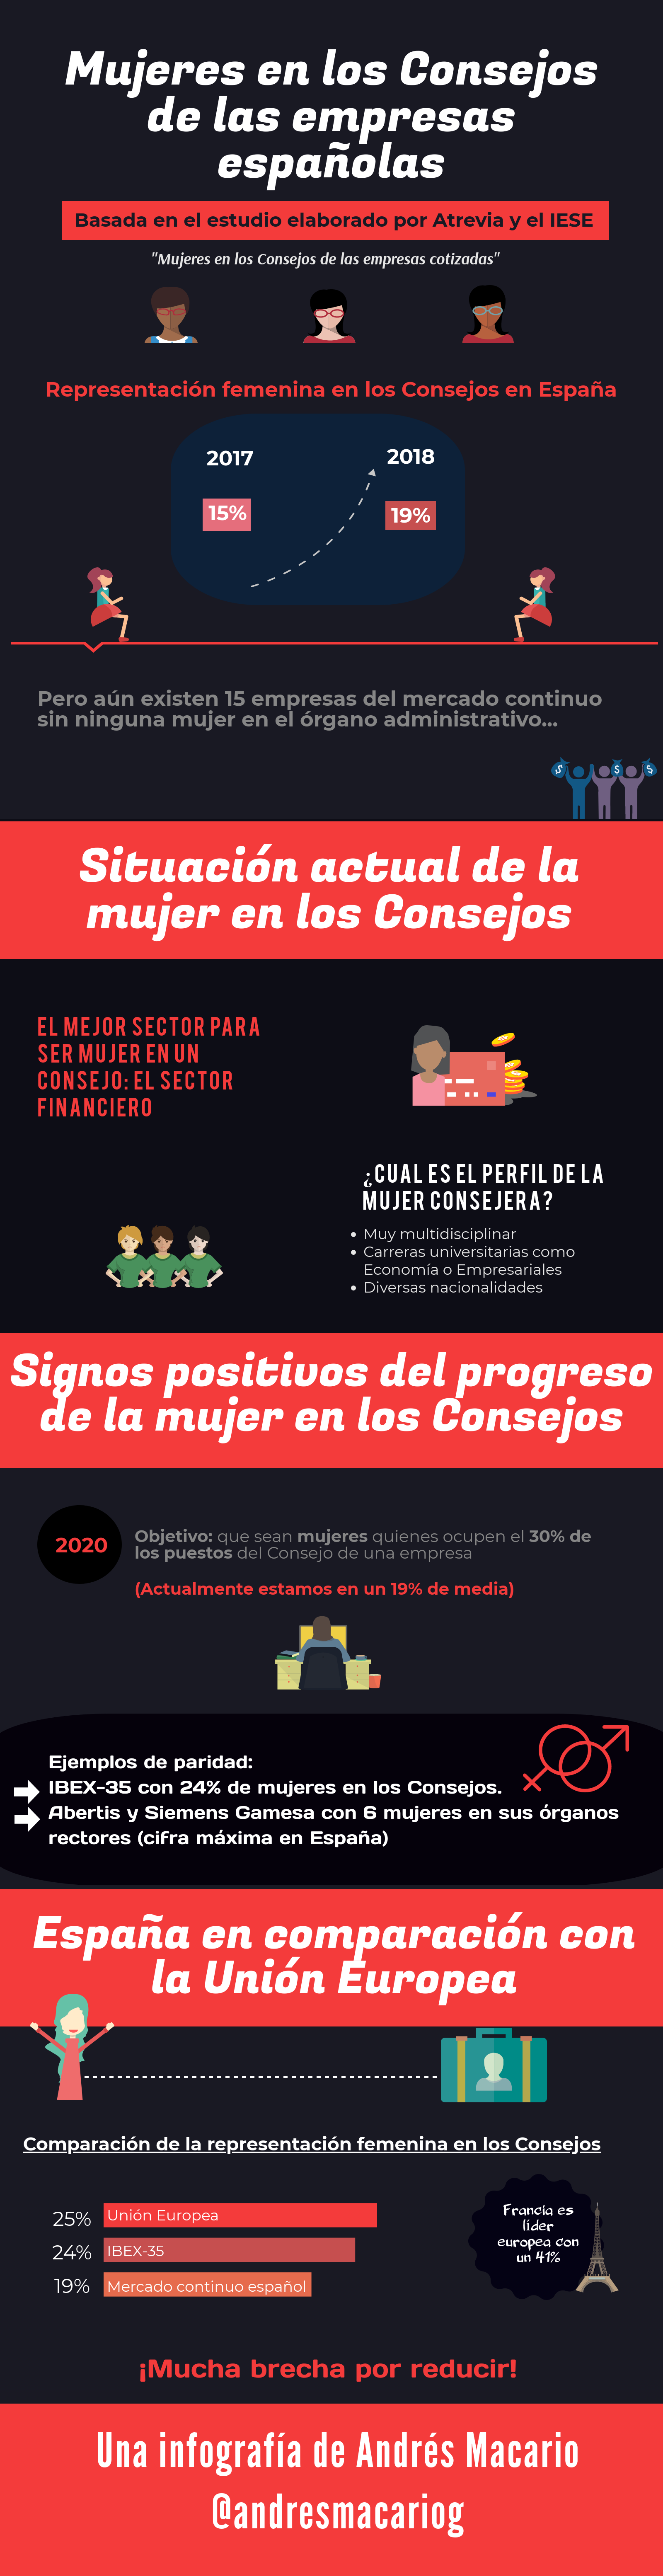 Mujeres en los consejos - infografía Andrés Macario